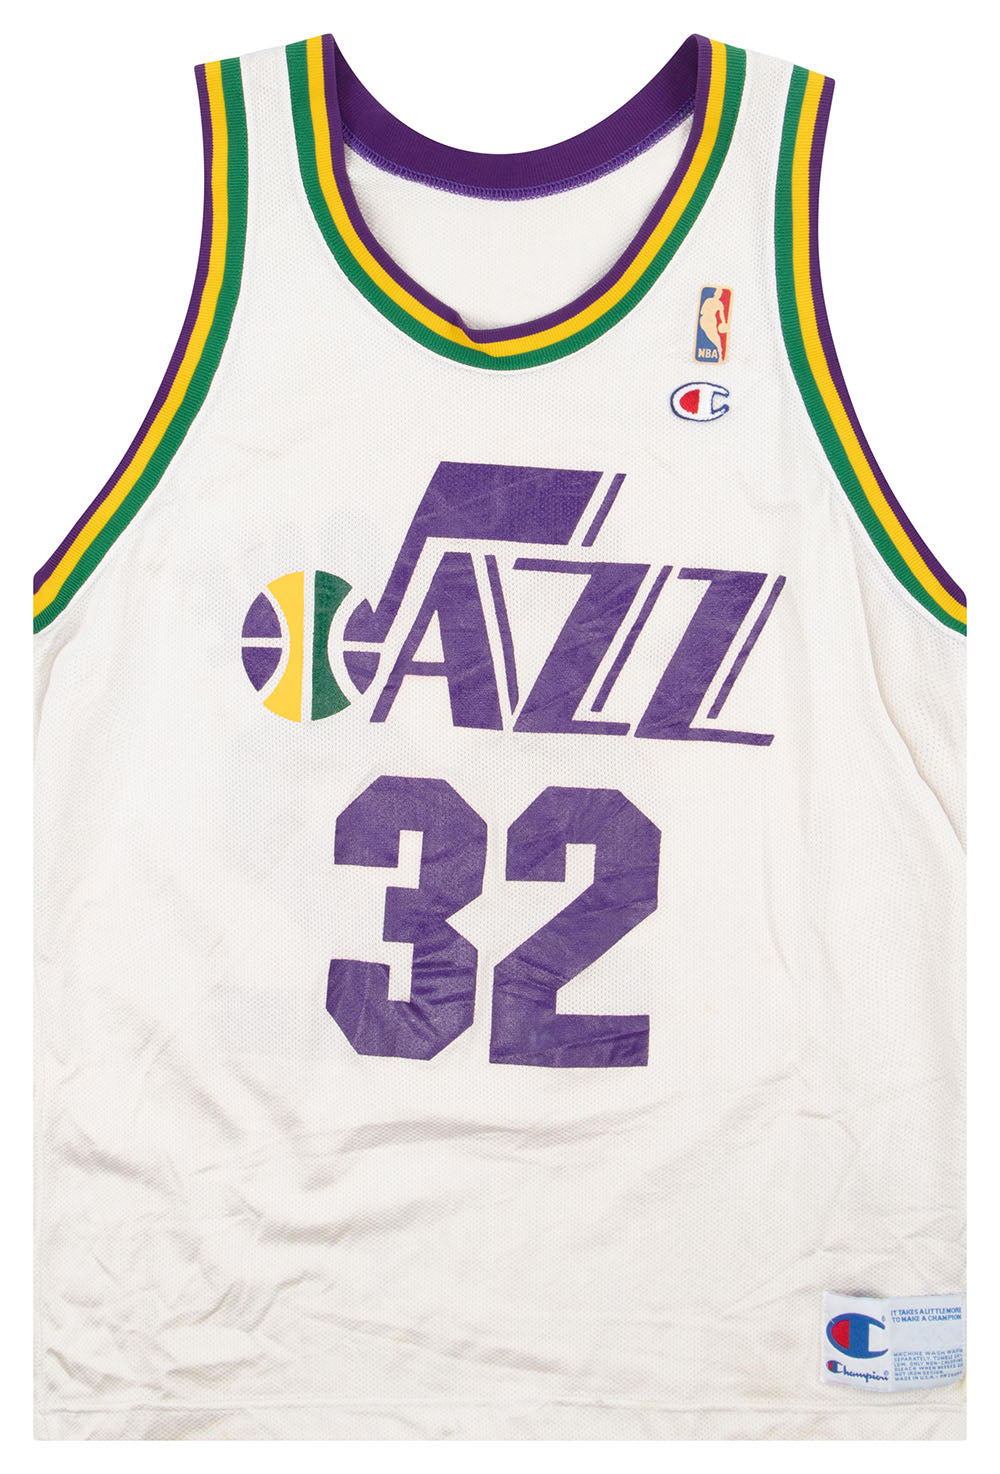 adidas, Shirts, Adidas Vintage Utah Jazz Karl Malone Jersey Size Large